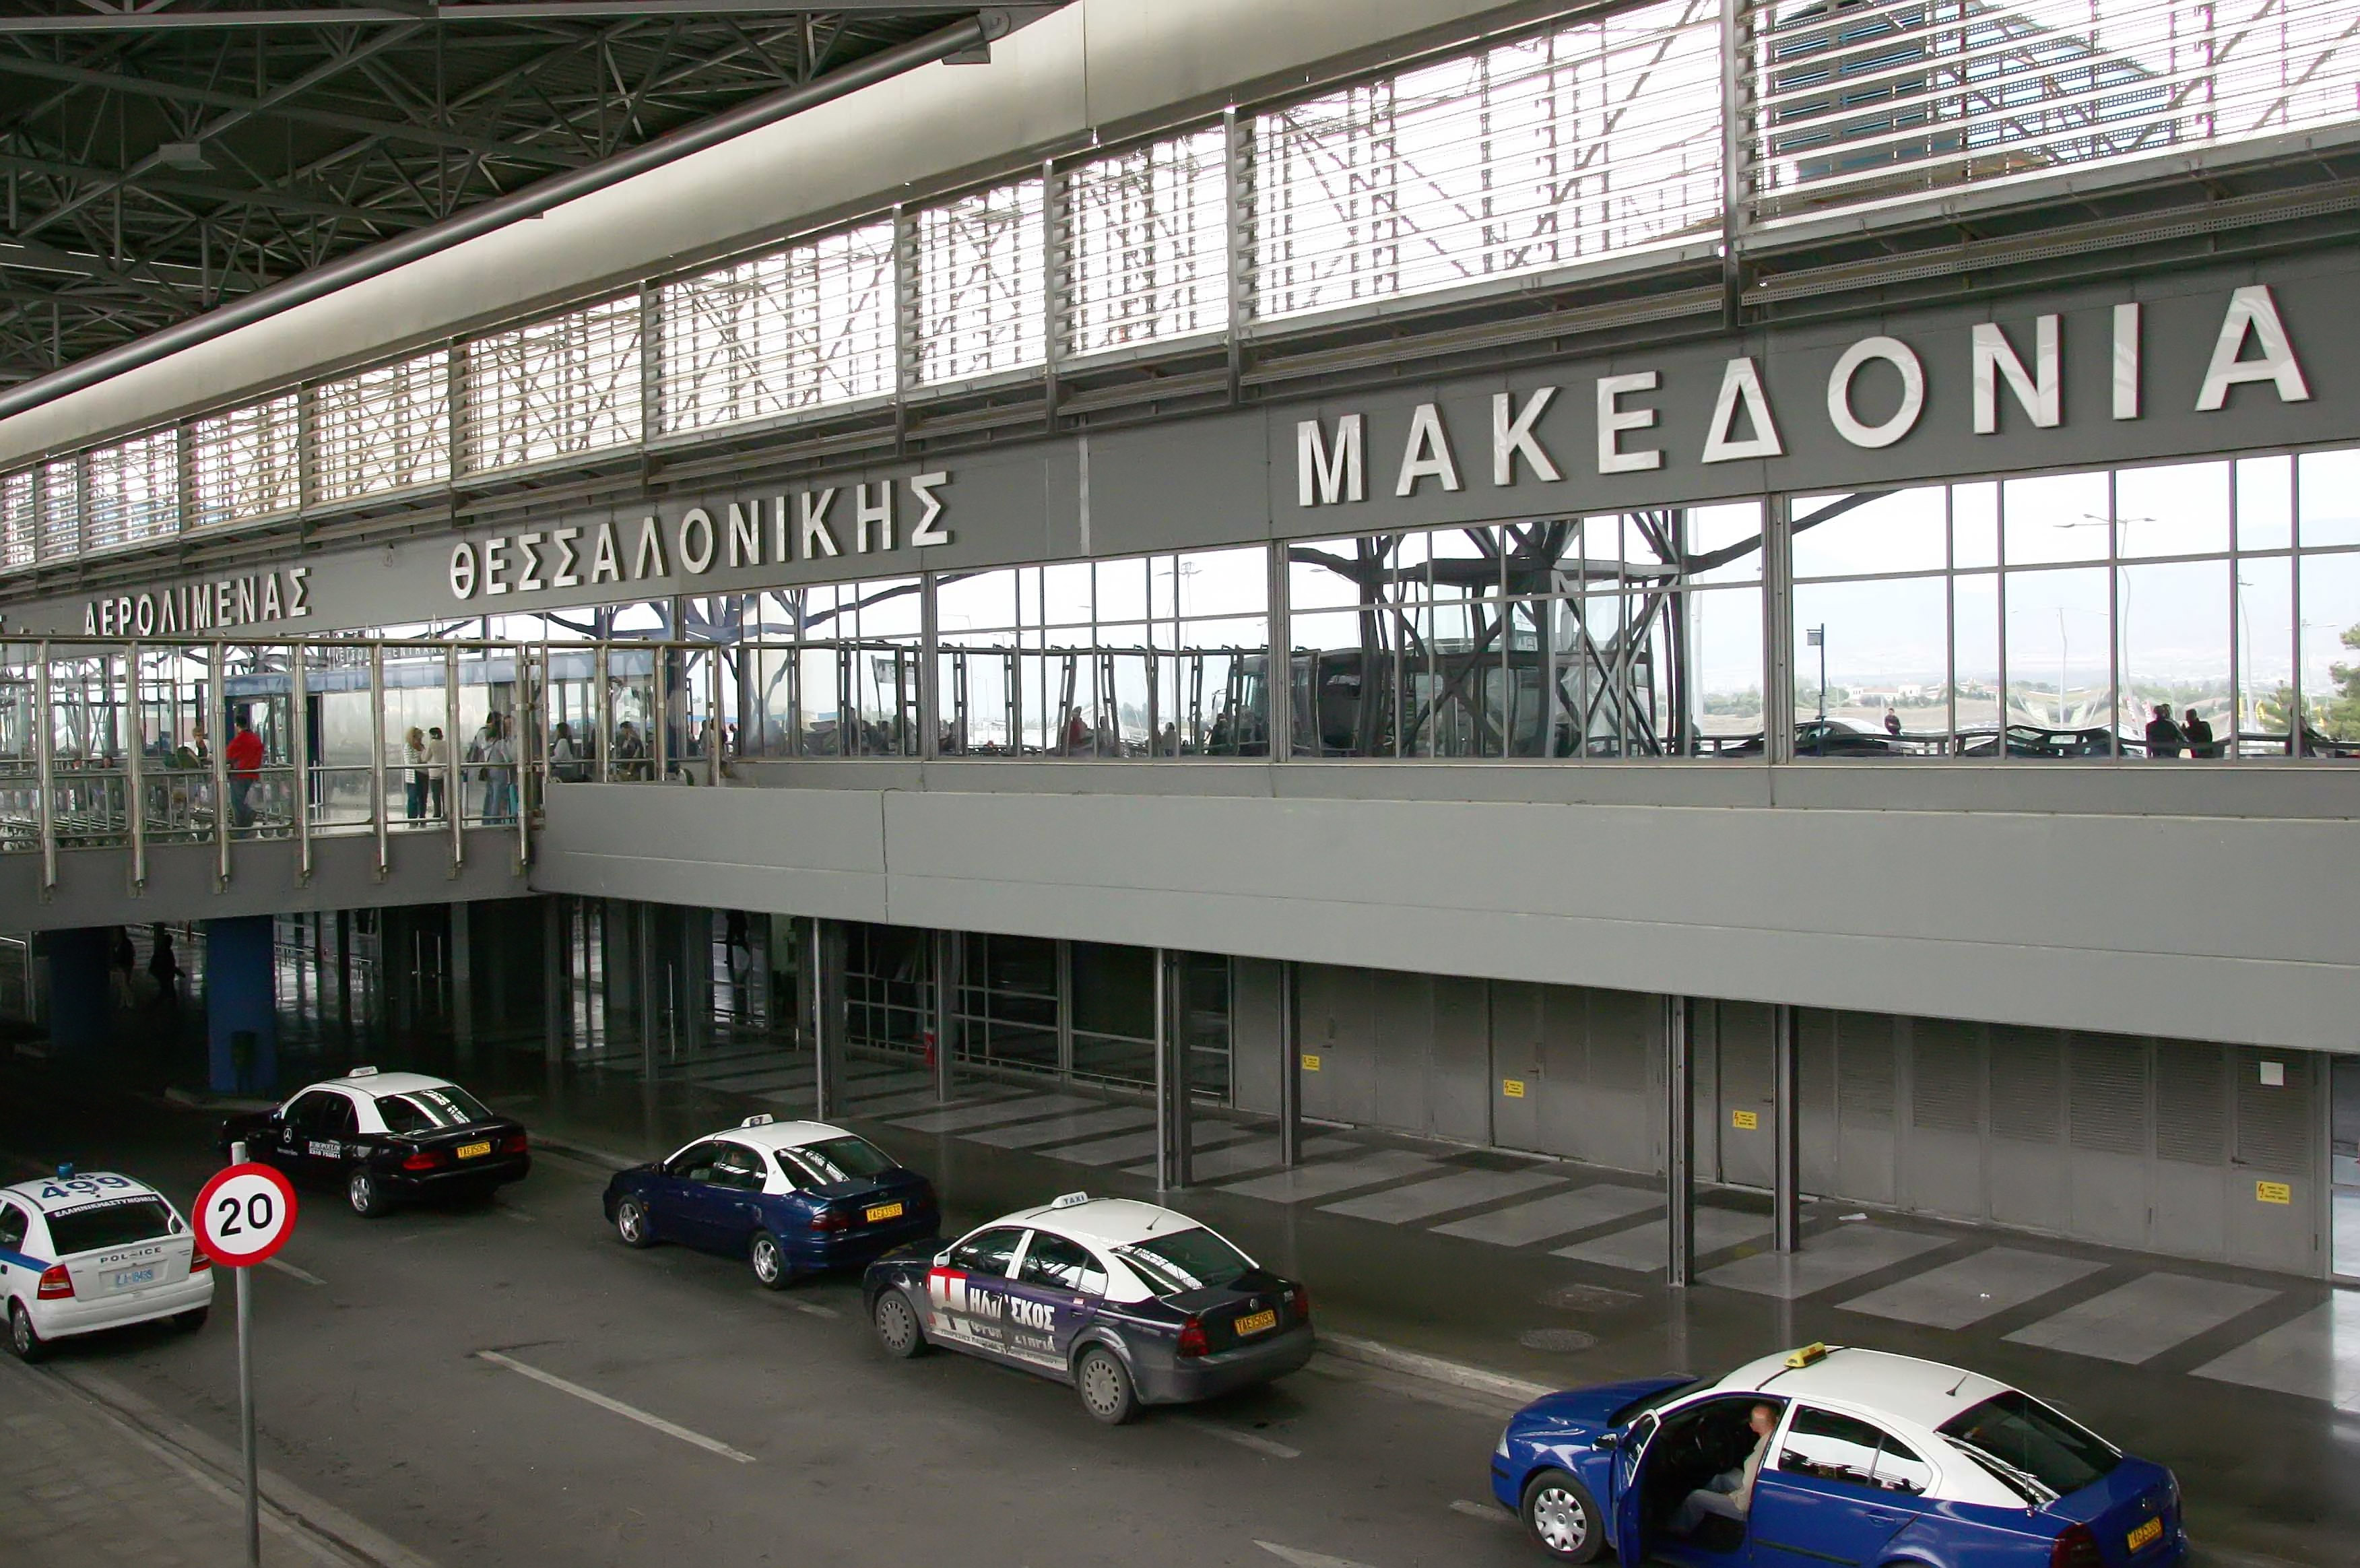 Σταθερό κόμιστρο από και προς το αεροδρόμιο «Μακεδονία»